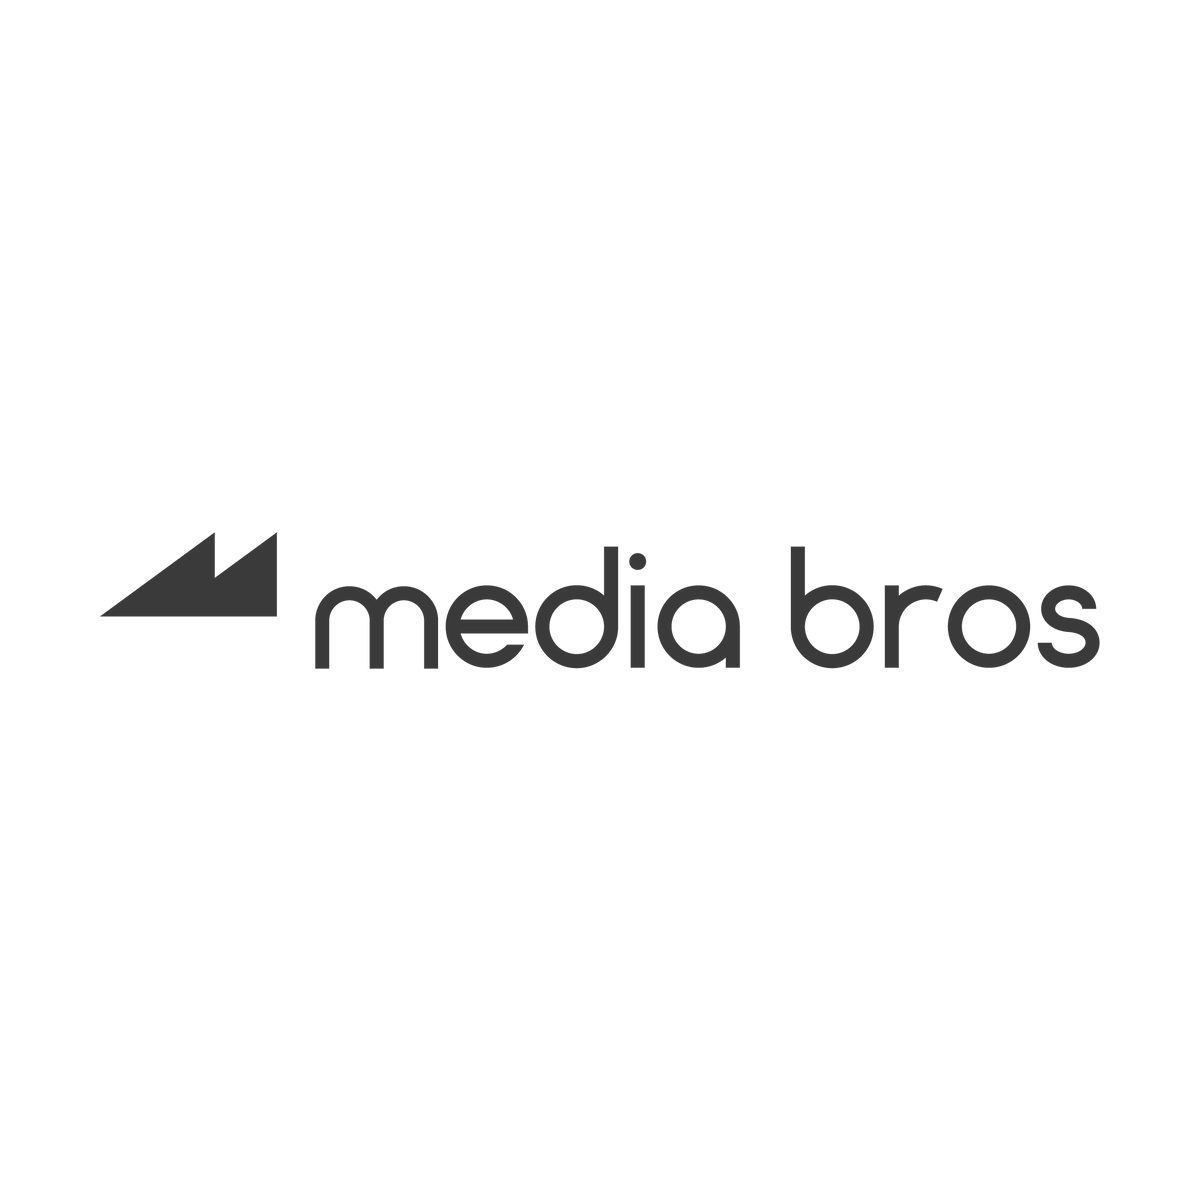 Media Bros